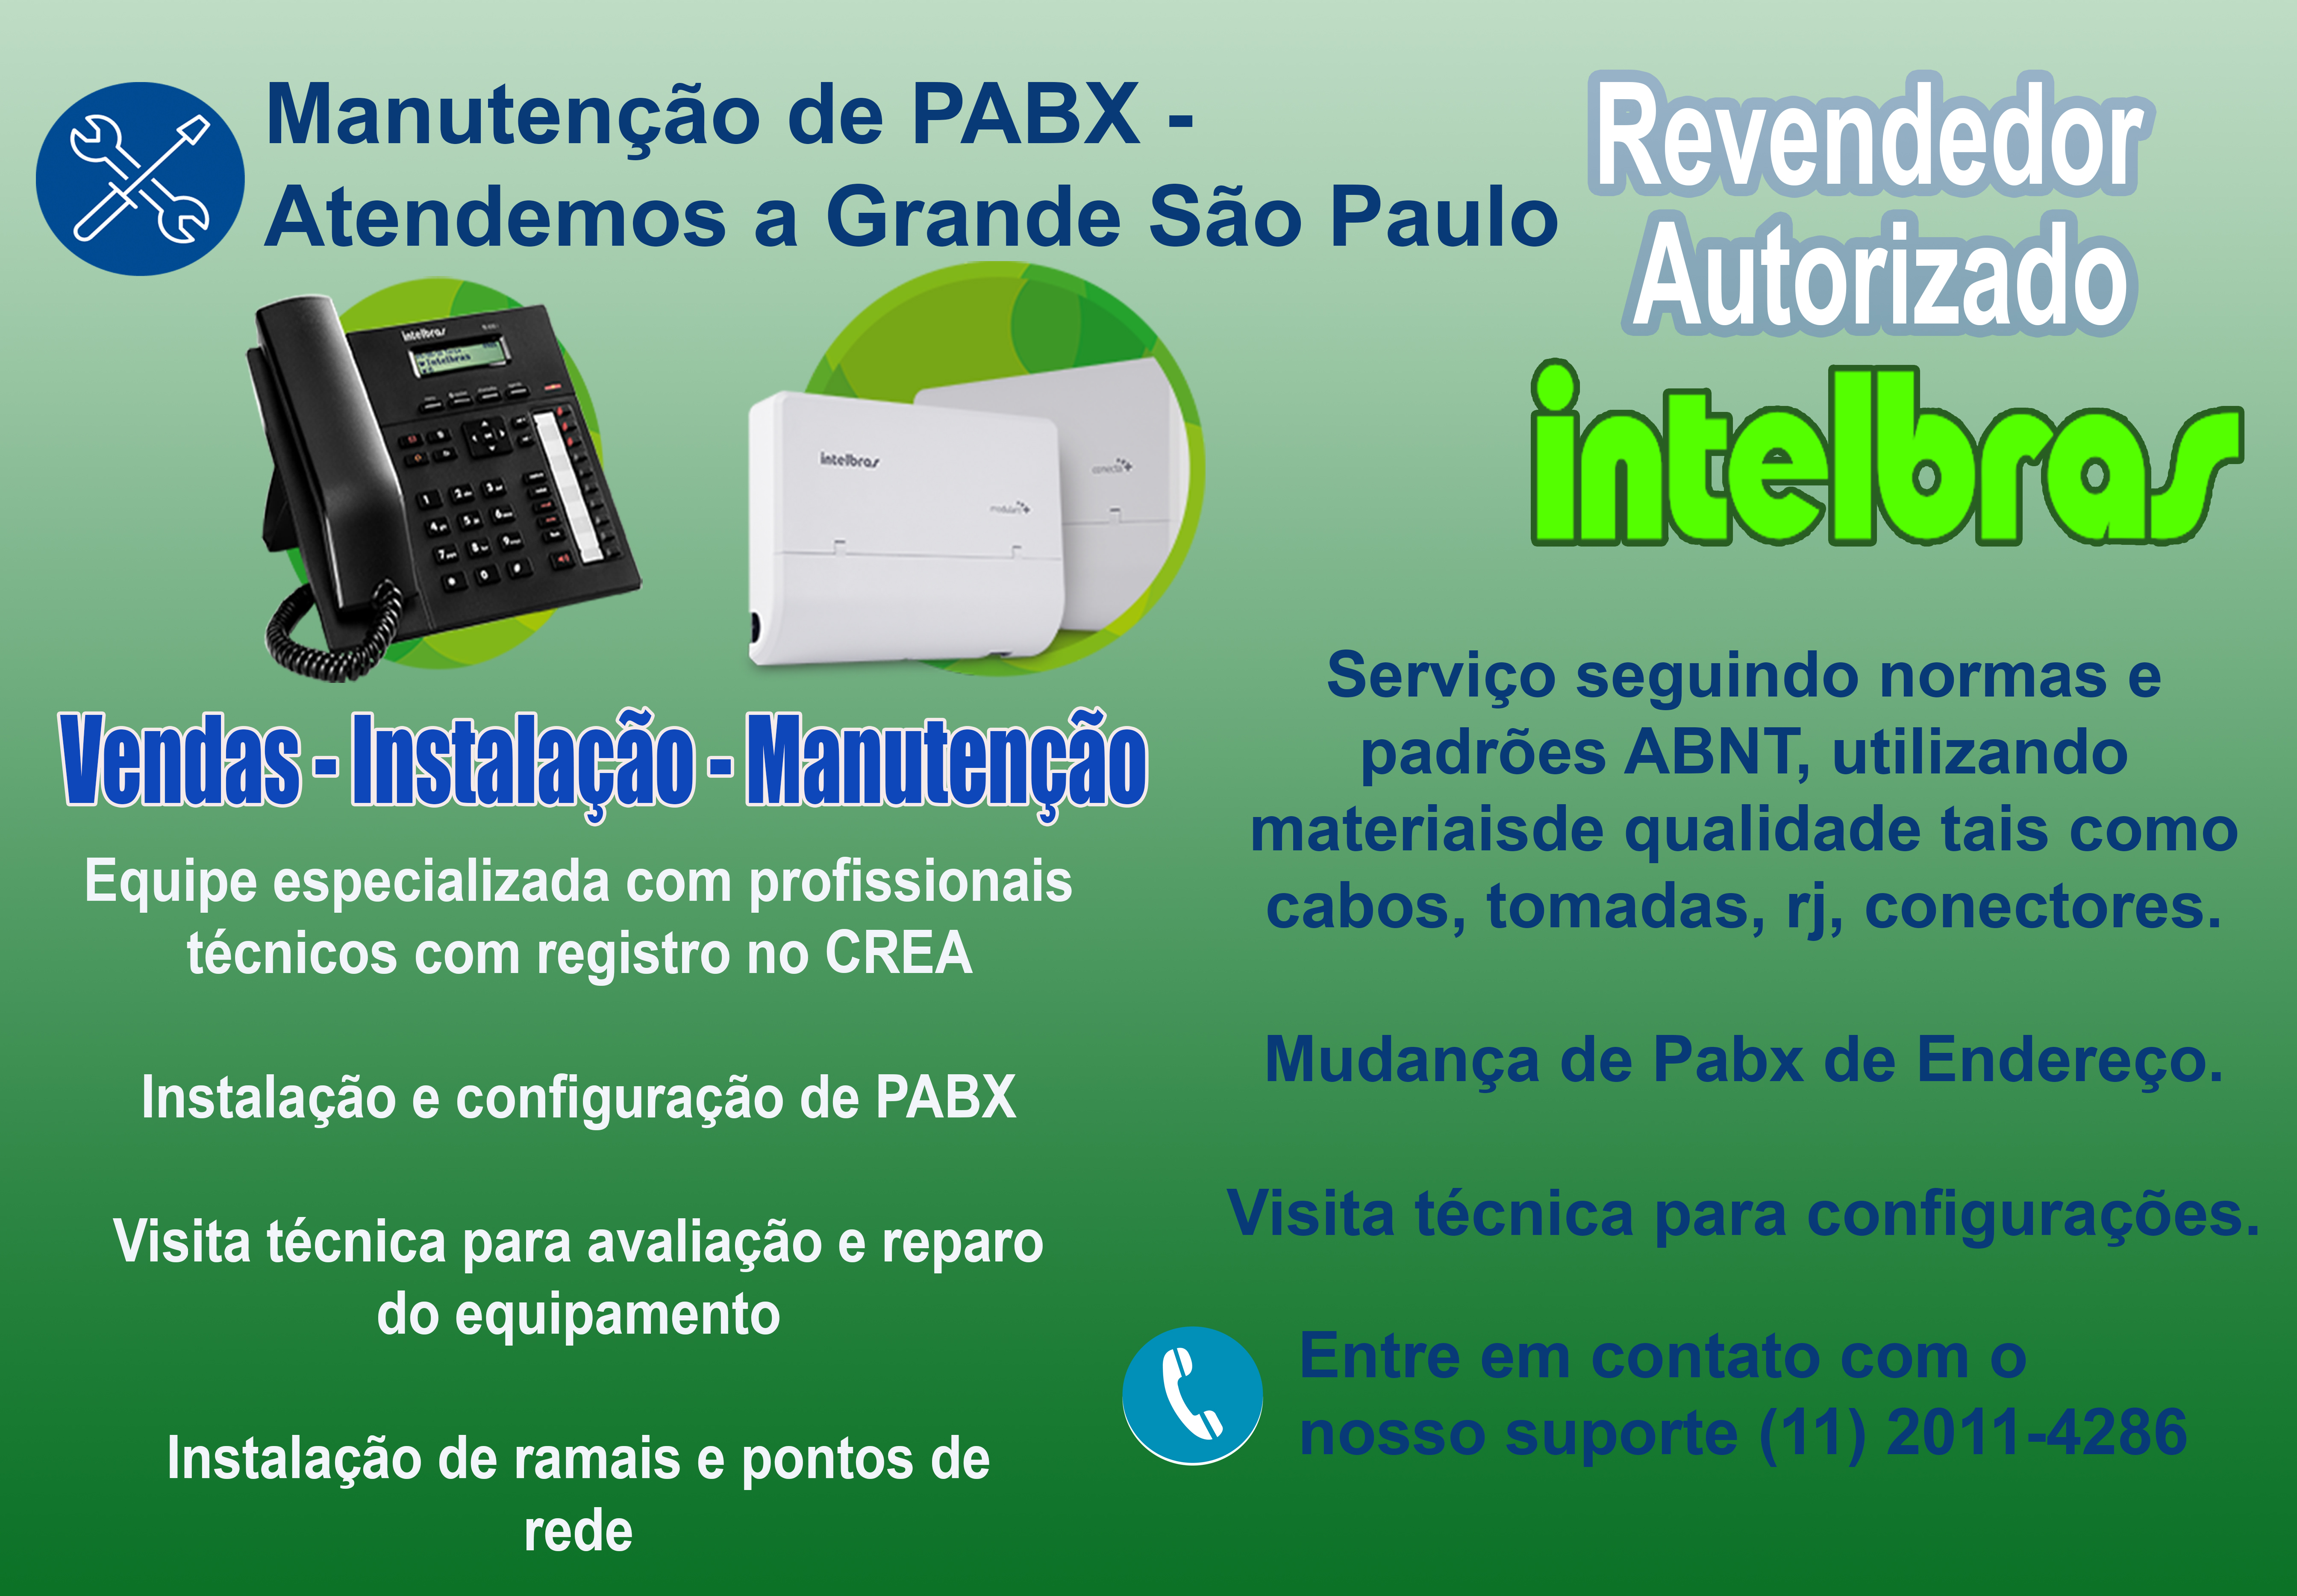 MANUTENO DE PABX - AUTORIZADA INTELBRAS, Solicite uma visita tcnica para Manuteno de PABX, (11) 2011-4286, profissionais qualificados registro CREA, atendimento PABX Intelbras e Panasonic.